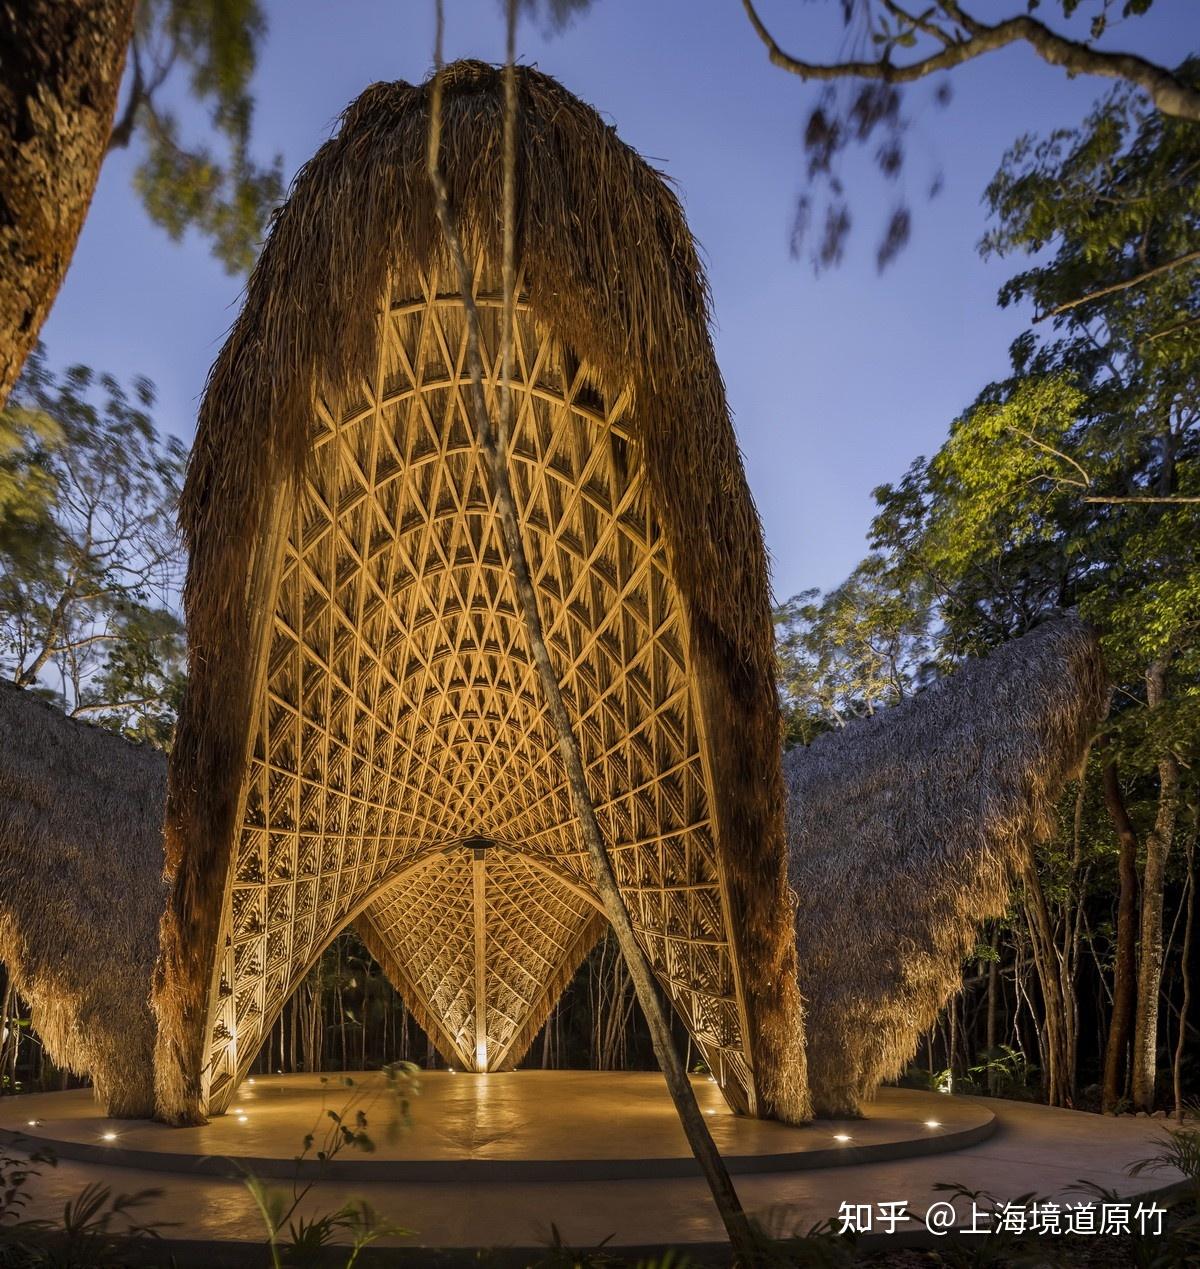 用竹子结构建造的特色文旅竹建筑寺庙竹亭可设计施工造型大气磅礴令人